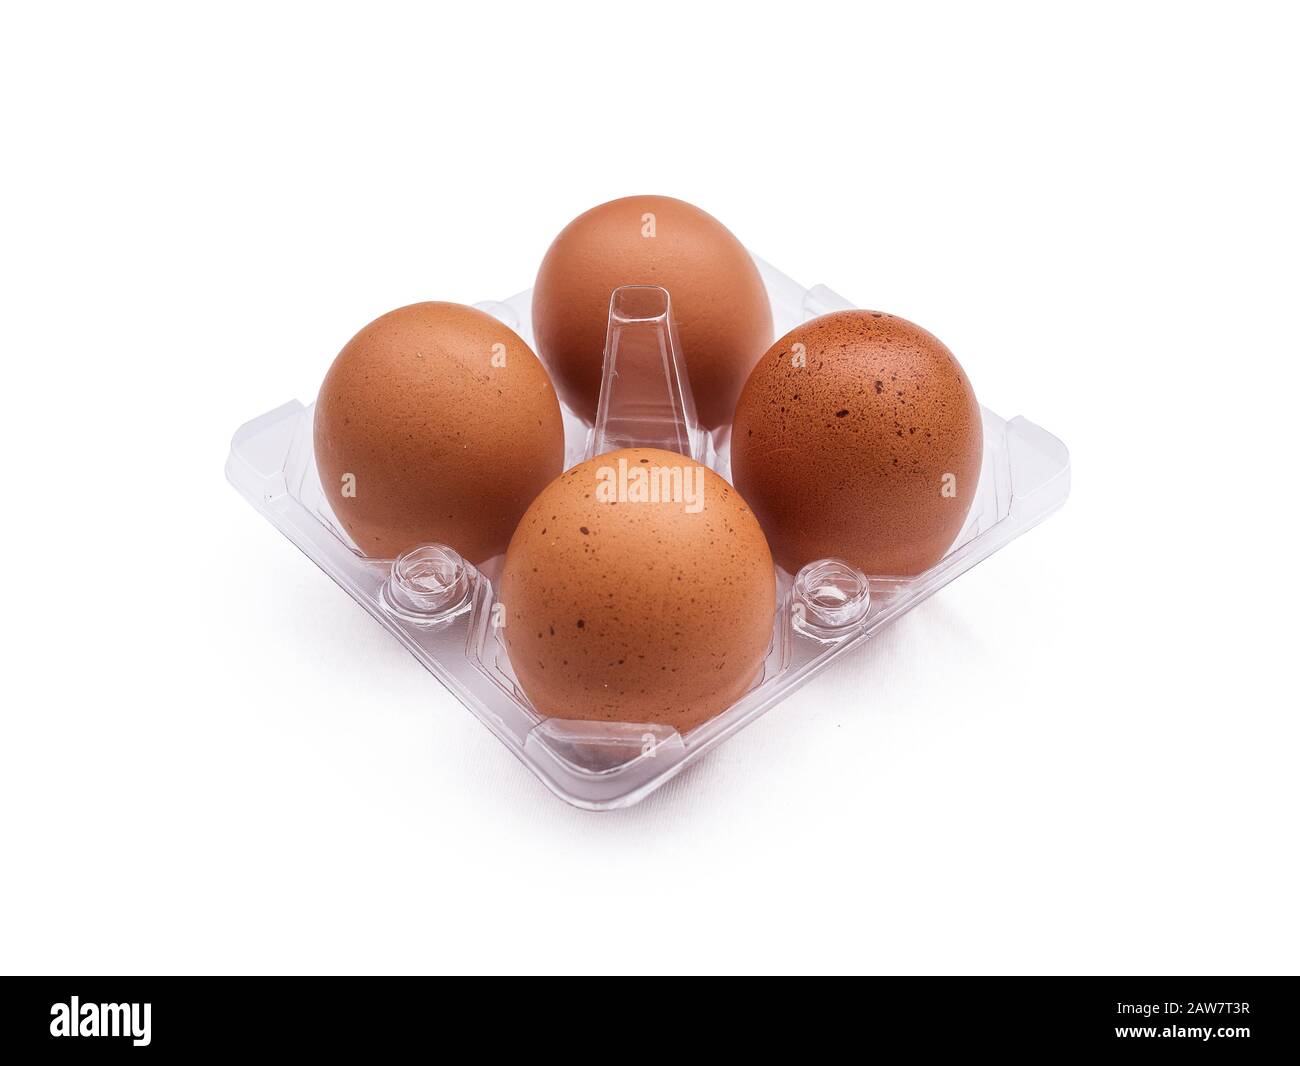 quattro uova sul vassoio isolato su sfondo bianco. foto di cibo girato in studio con percorso di ritaglio Foto Stock